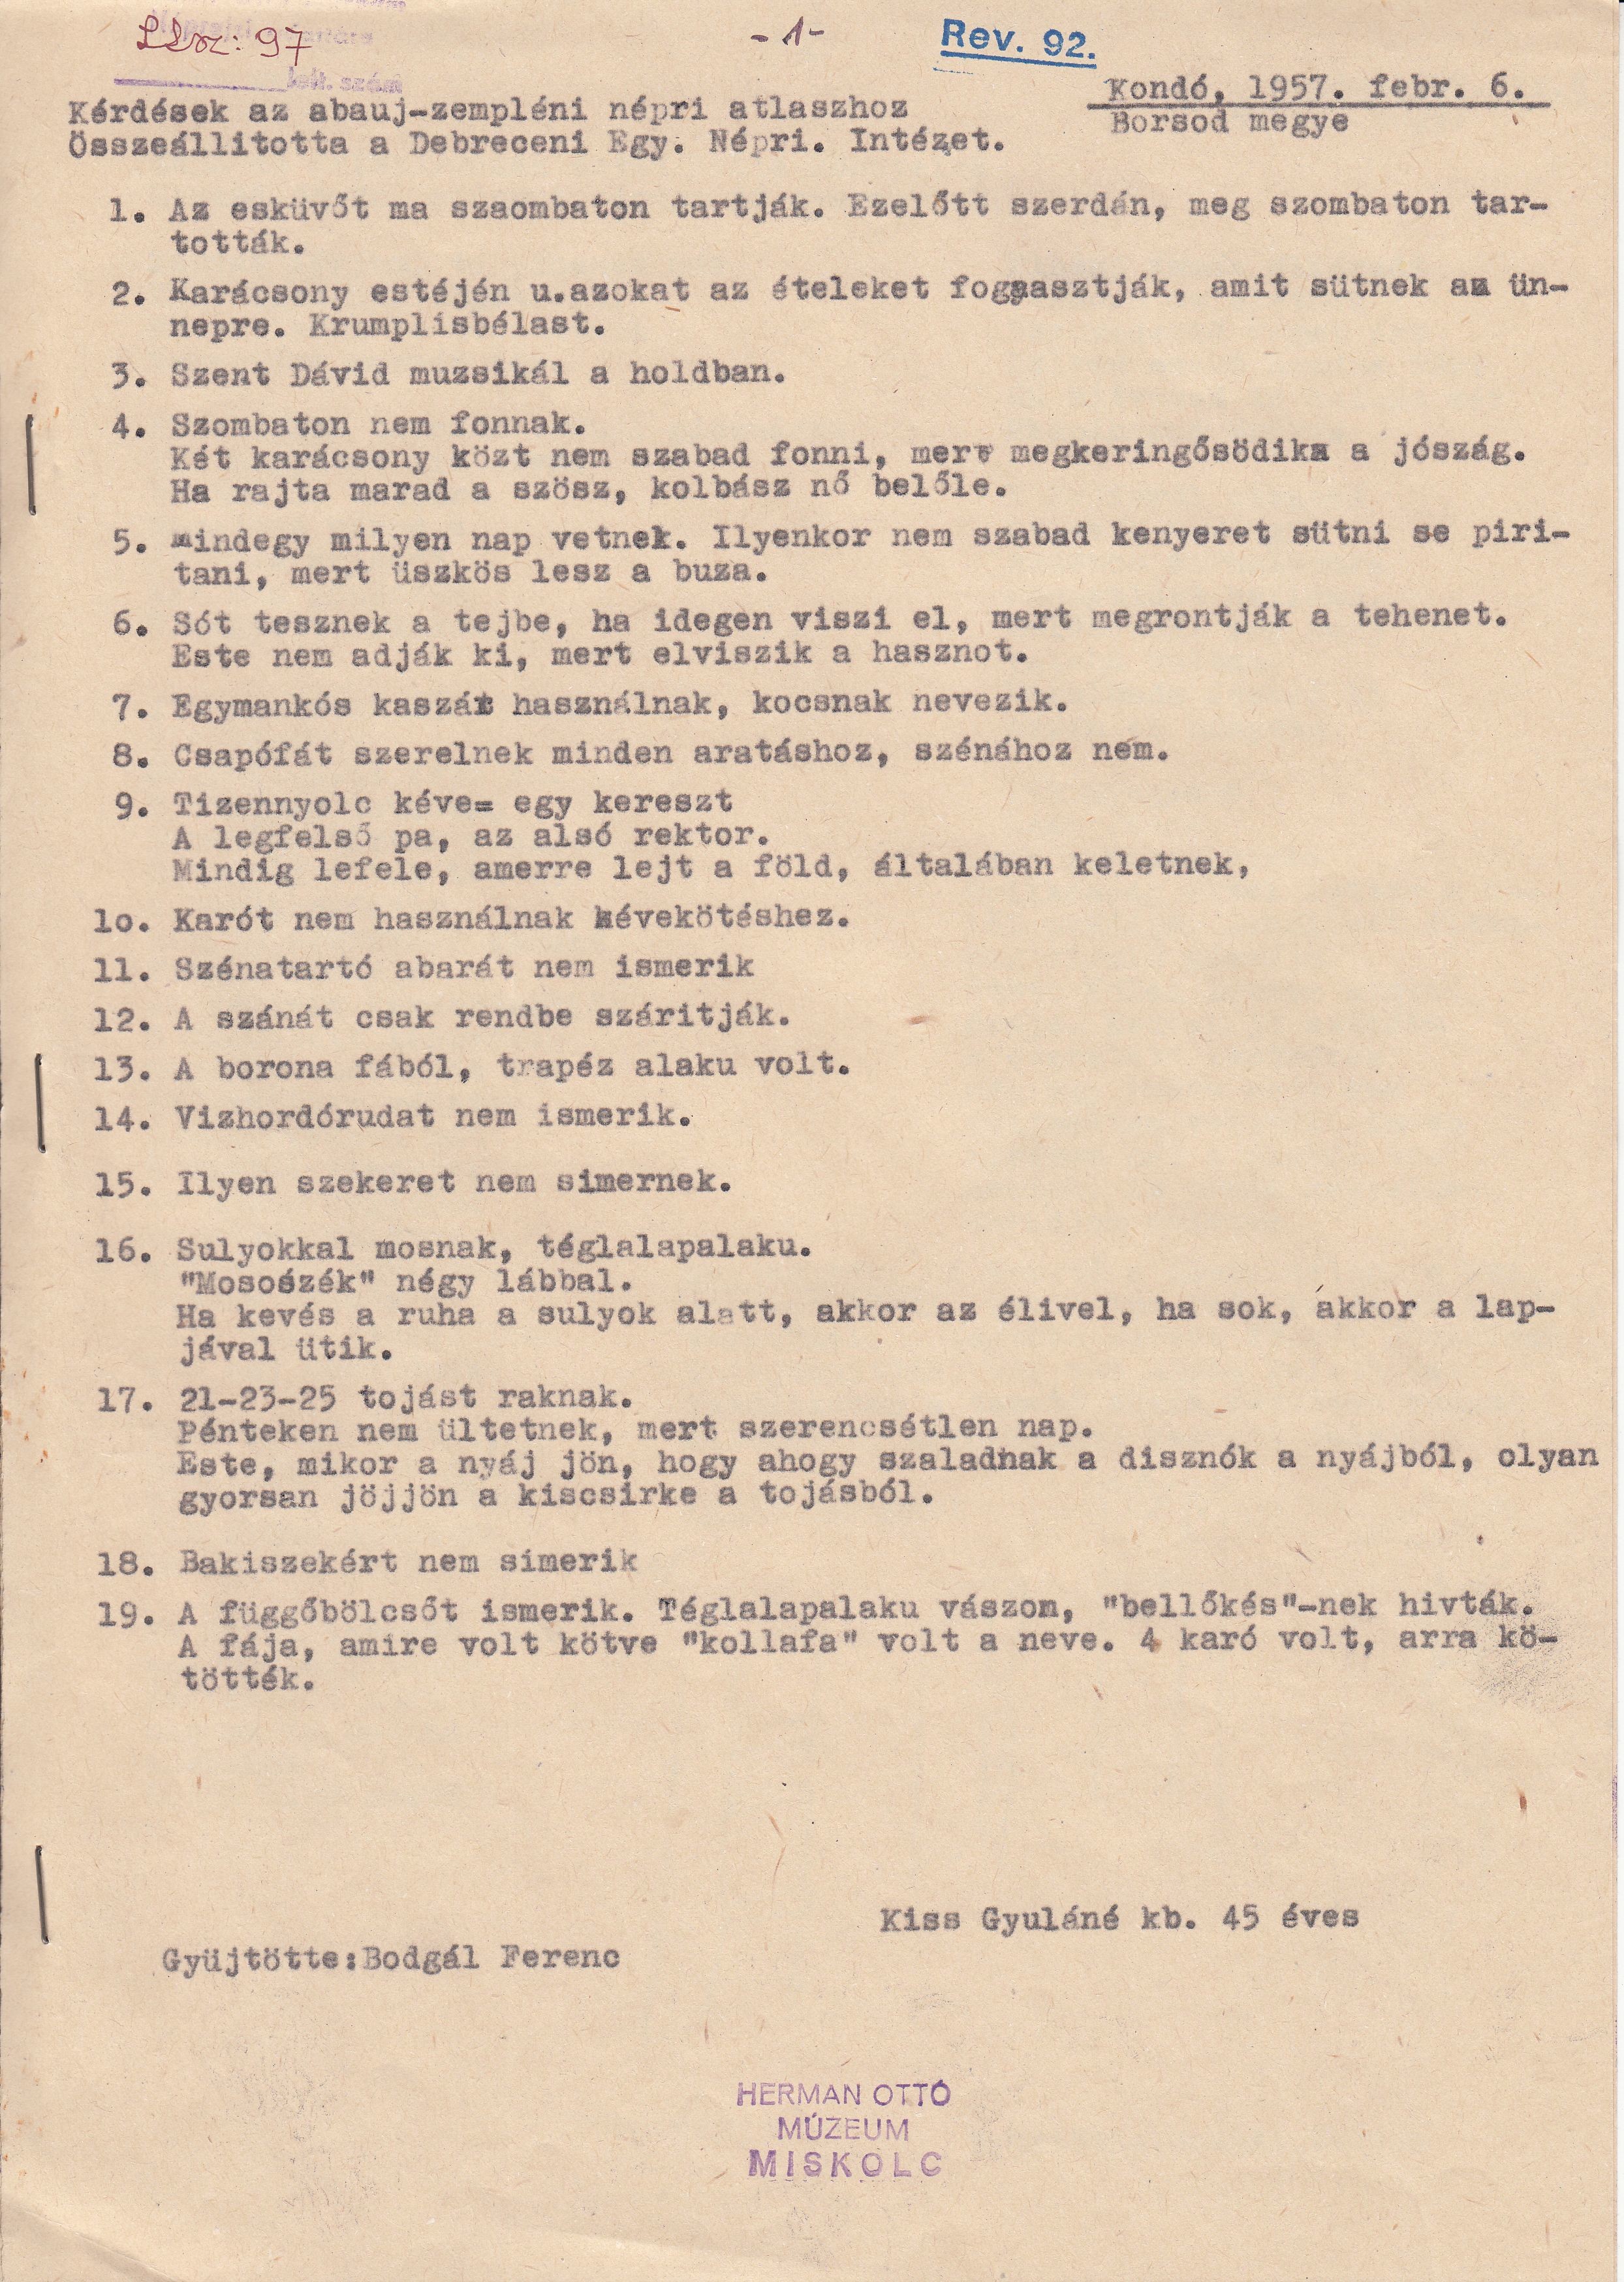 Kérdések az abaúj-zempléni néprajzi atlaszhoz, sírfeliratok. (Herman Ottó Múzeum CC BY-NC-SA)